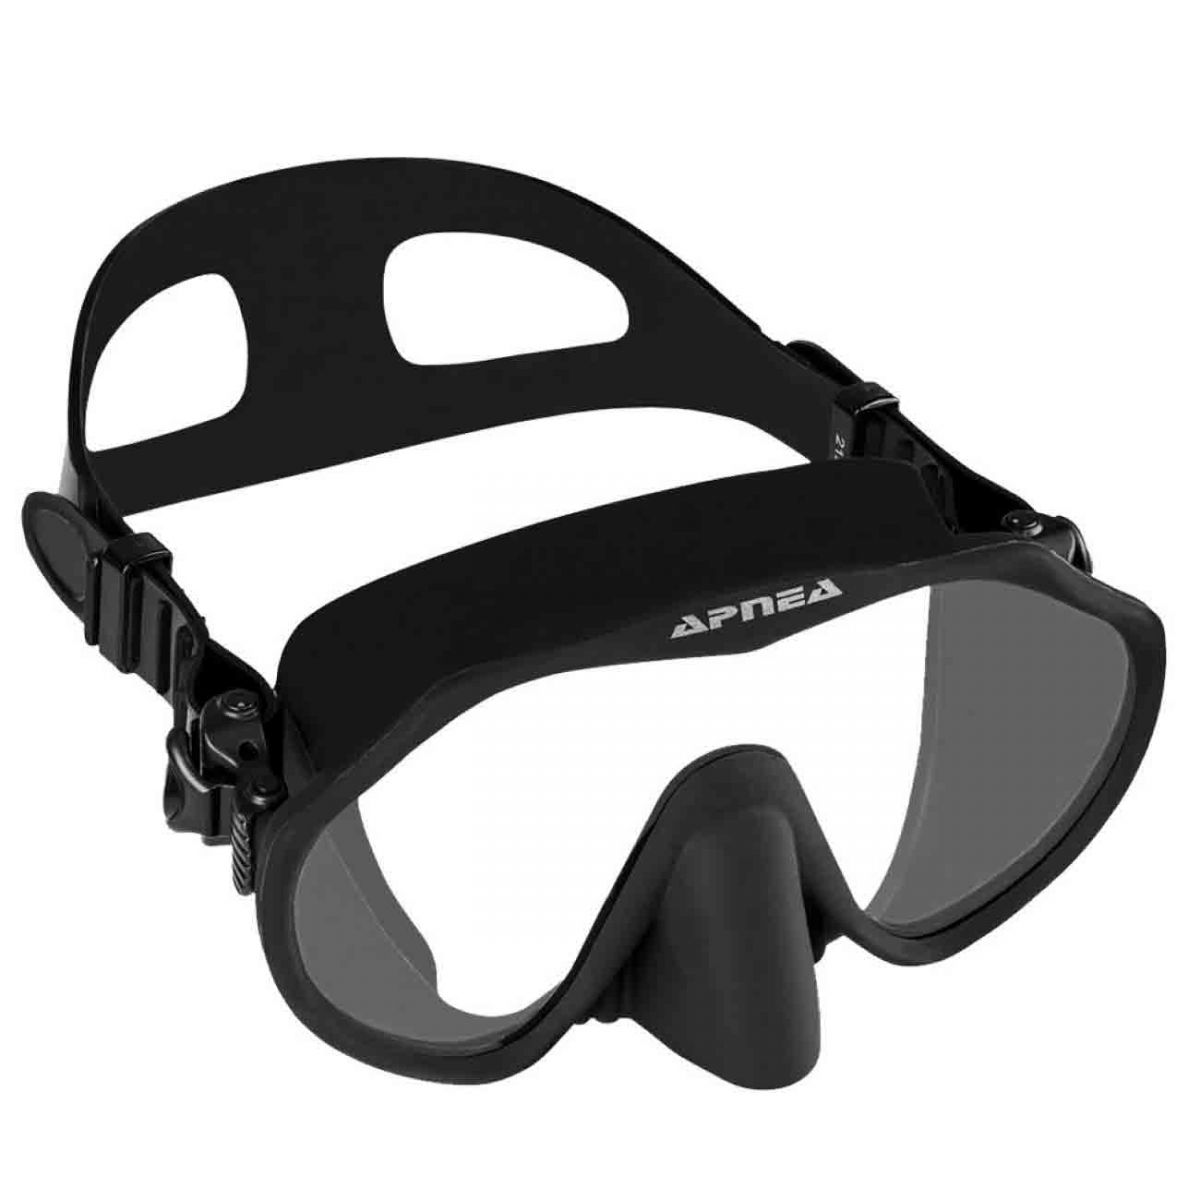 Apnea Discovery Siyah Dalış Maskesi,Apnea kalitesinde uzun yıllar gönül rahatlığı ile kullanabileceğiniz dalış maskesi